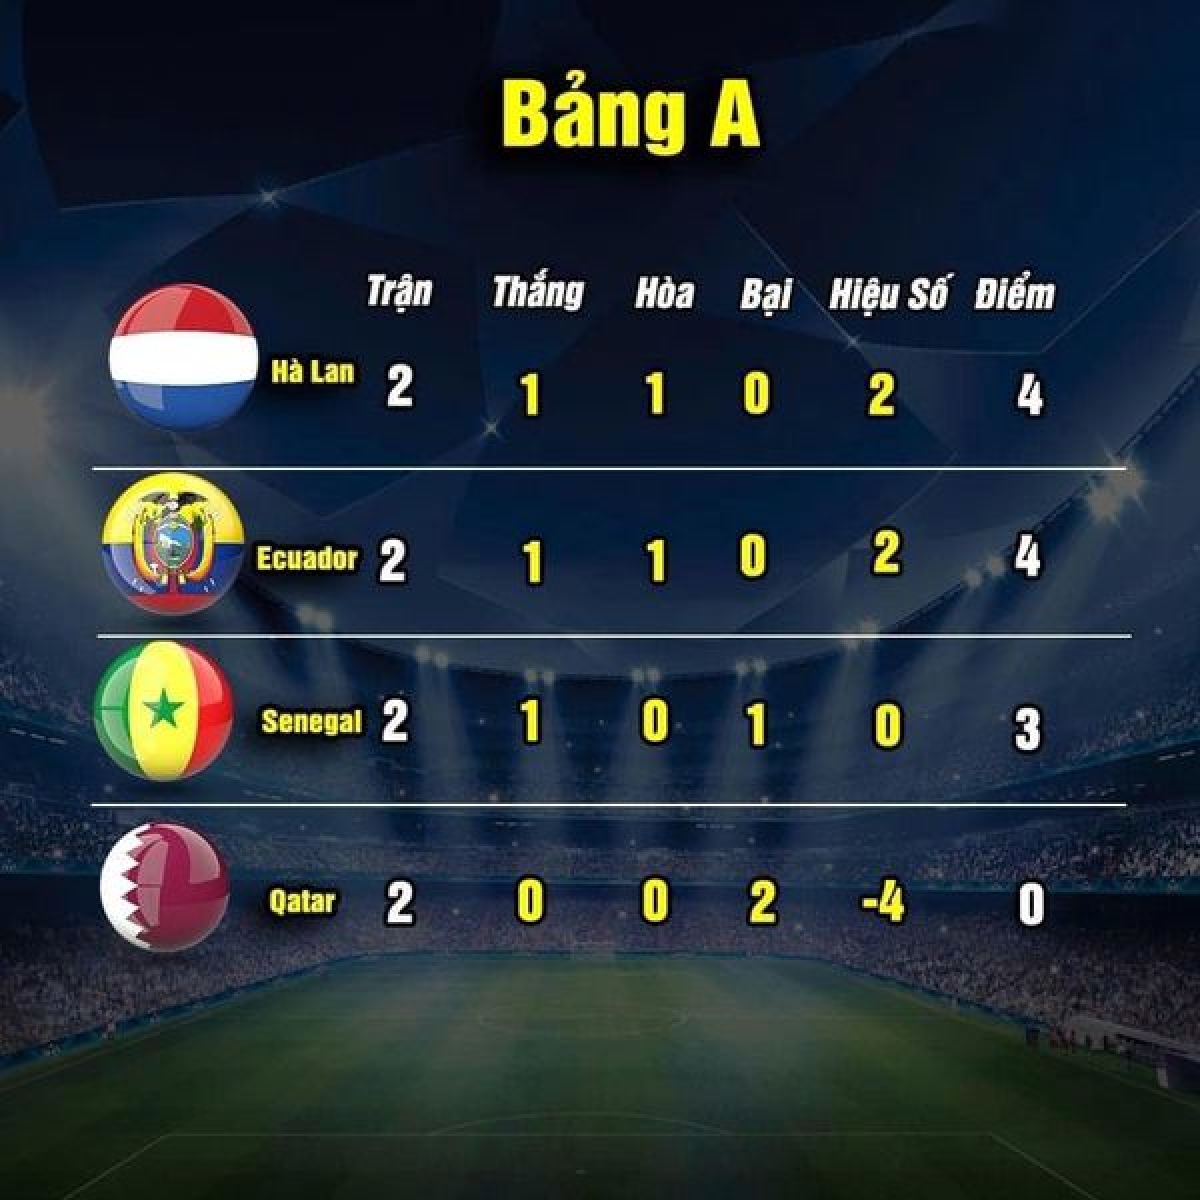 Cục diện bảng A sau hai lượt trận (ảnh: Thethao.vn) 